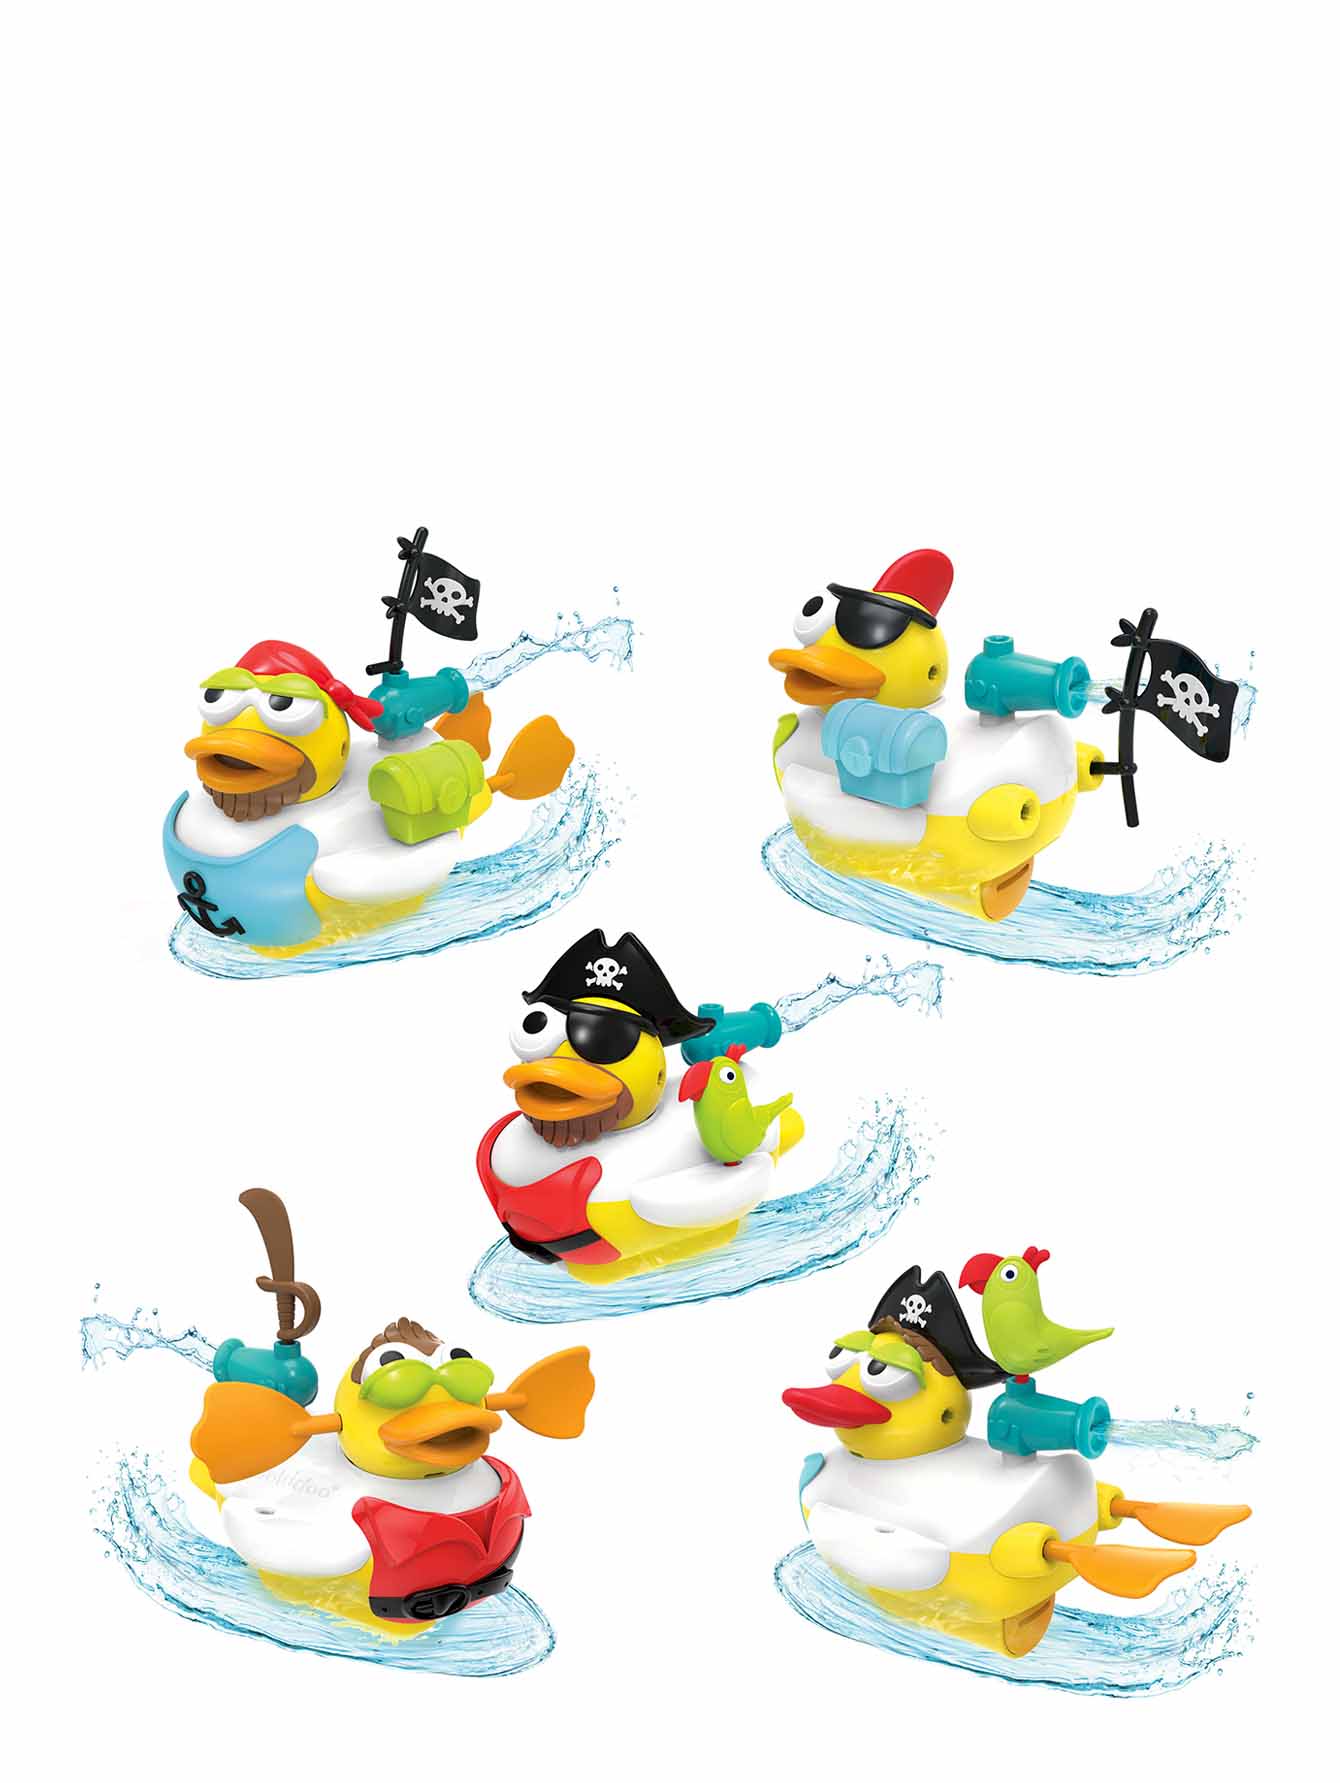 Водная игрушка "Утка-пират" с водометом и аксессуарами - Общий вид